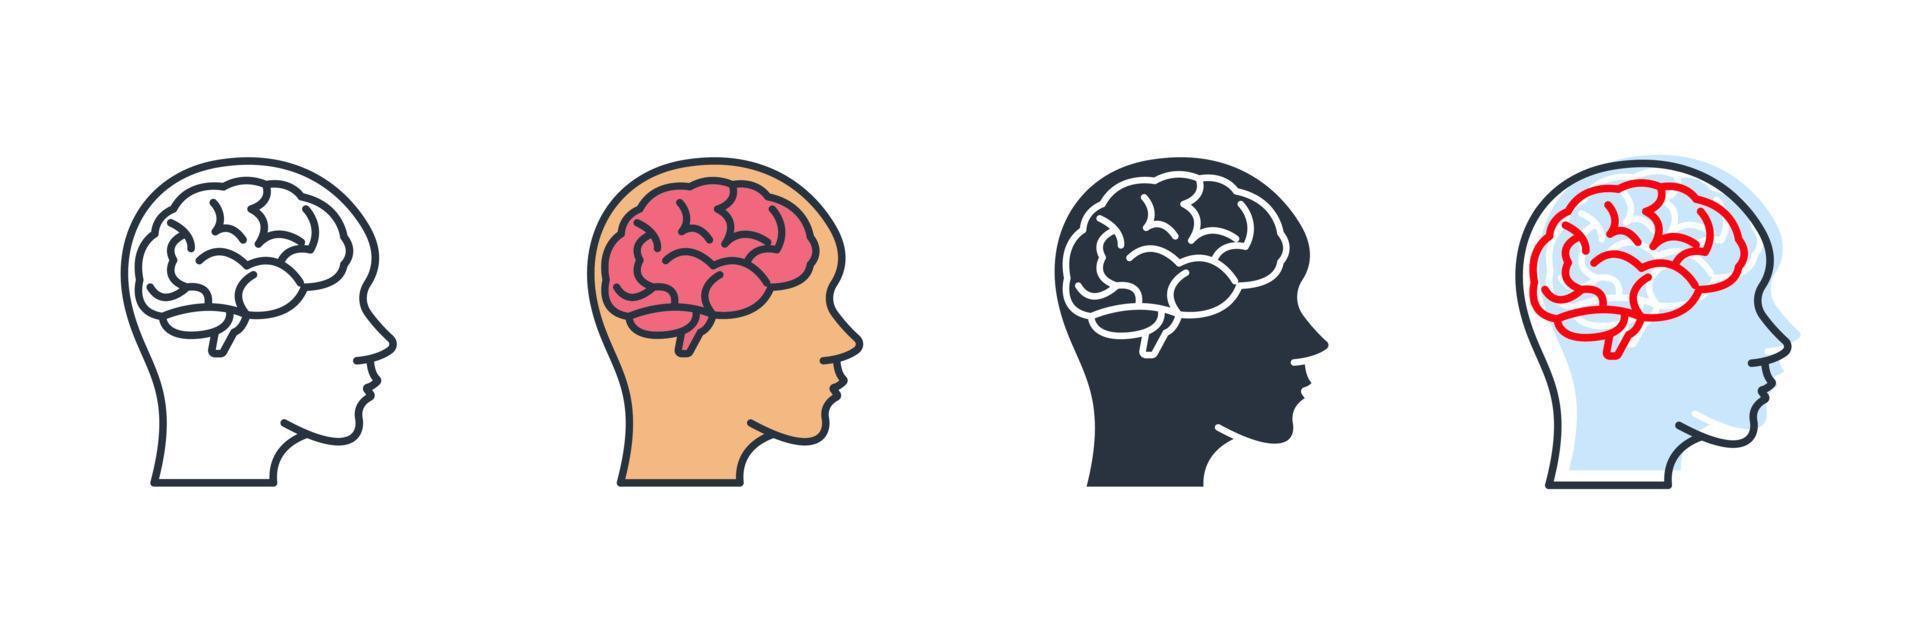 illustration vectorielle du logo de l'icône de neurobiologie. modèle de symbole du cerveau humain pour la collection de conception graphique et web vecteur